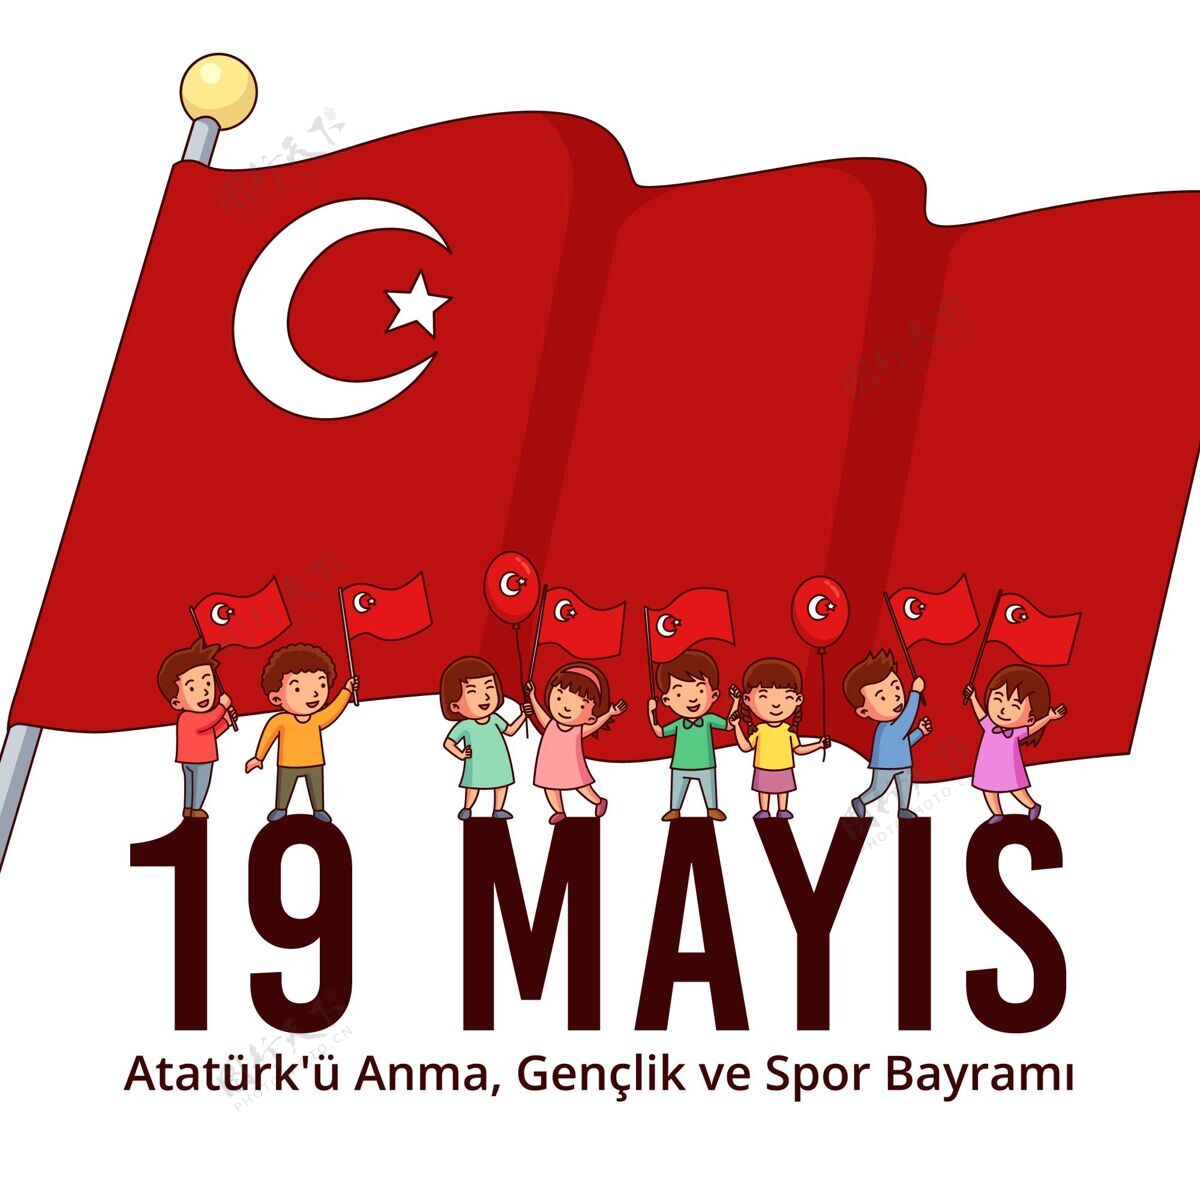 活动手绘土耳其纪念阿塔图克 青年和体育日插图土耳其手绘巴伊拉姆